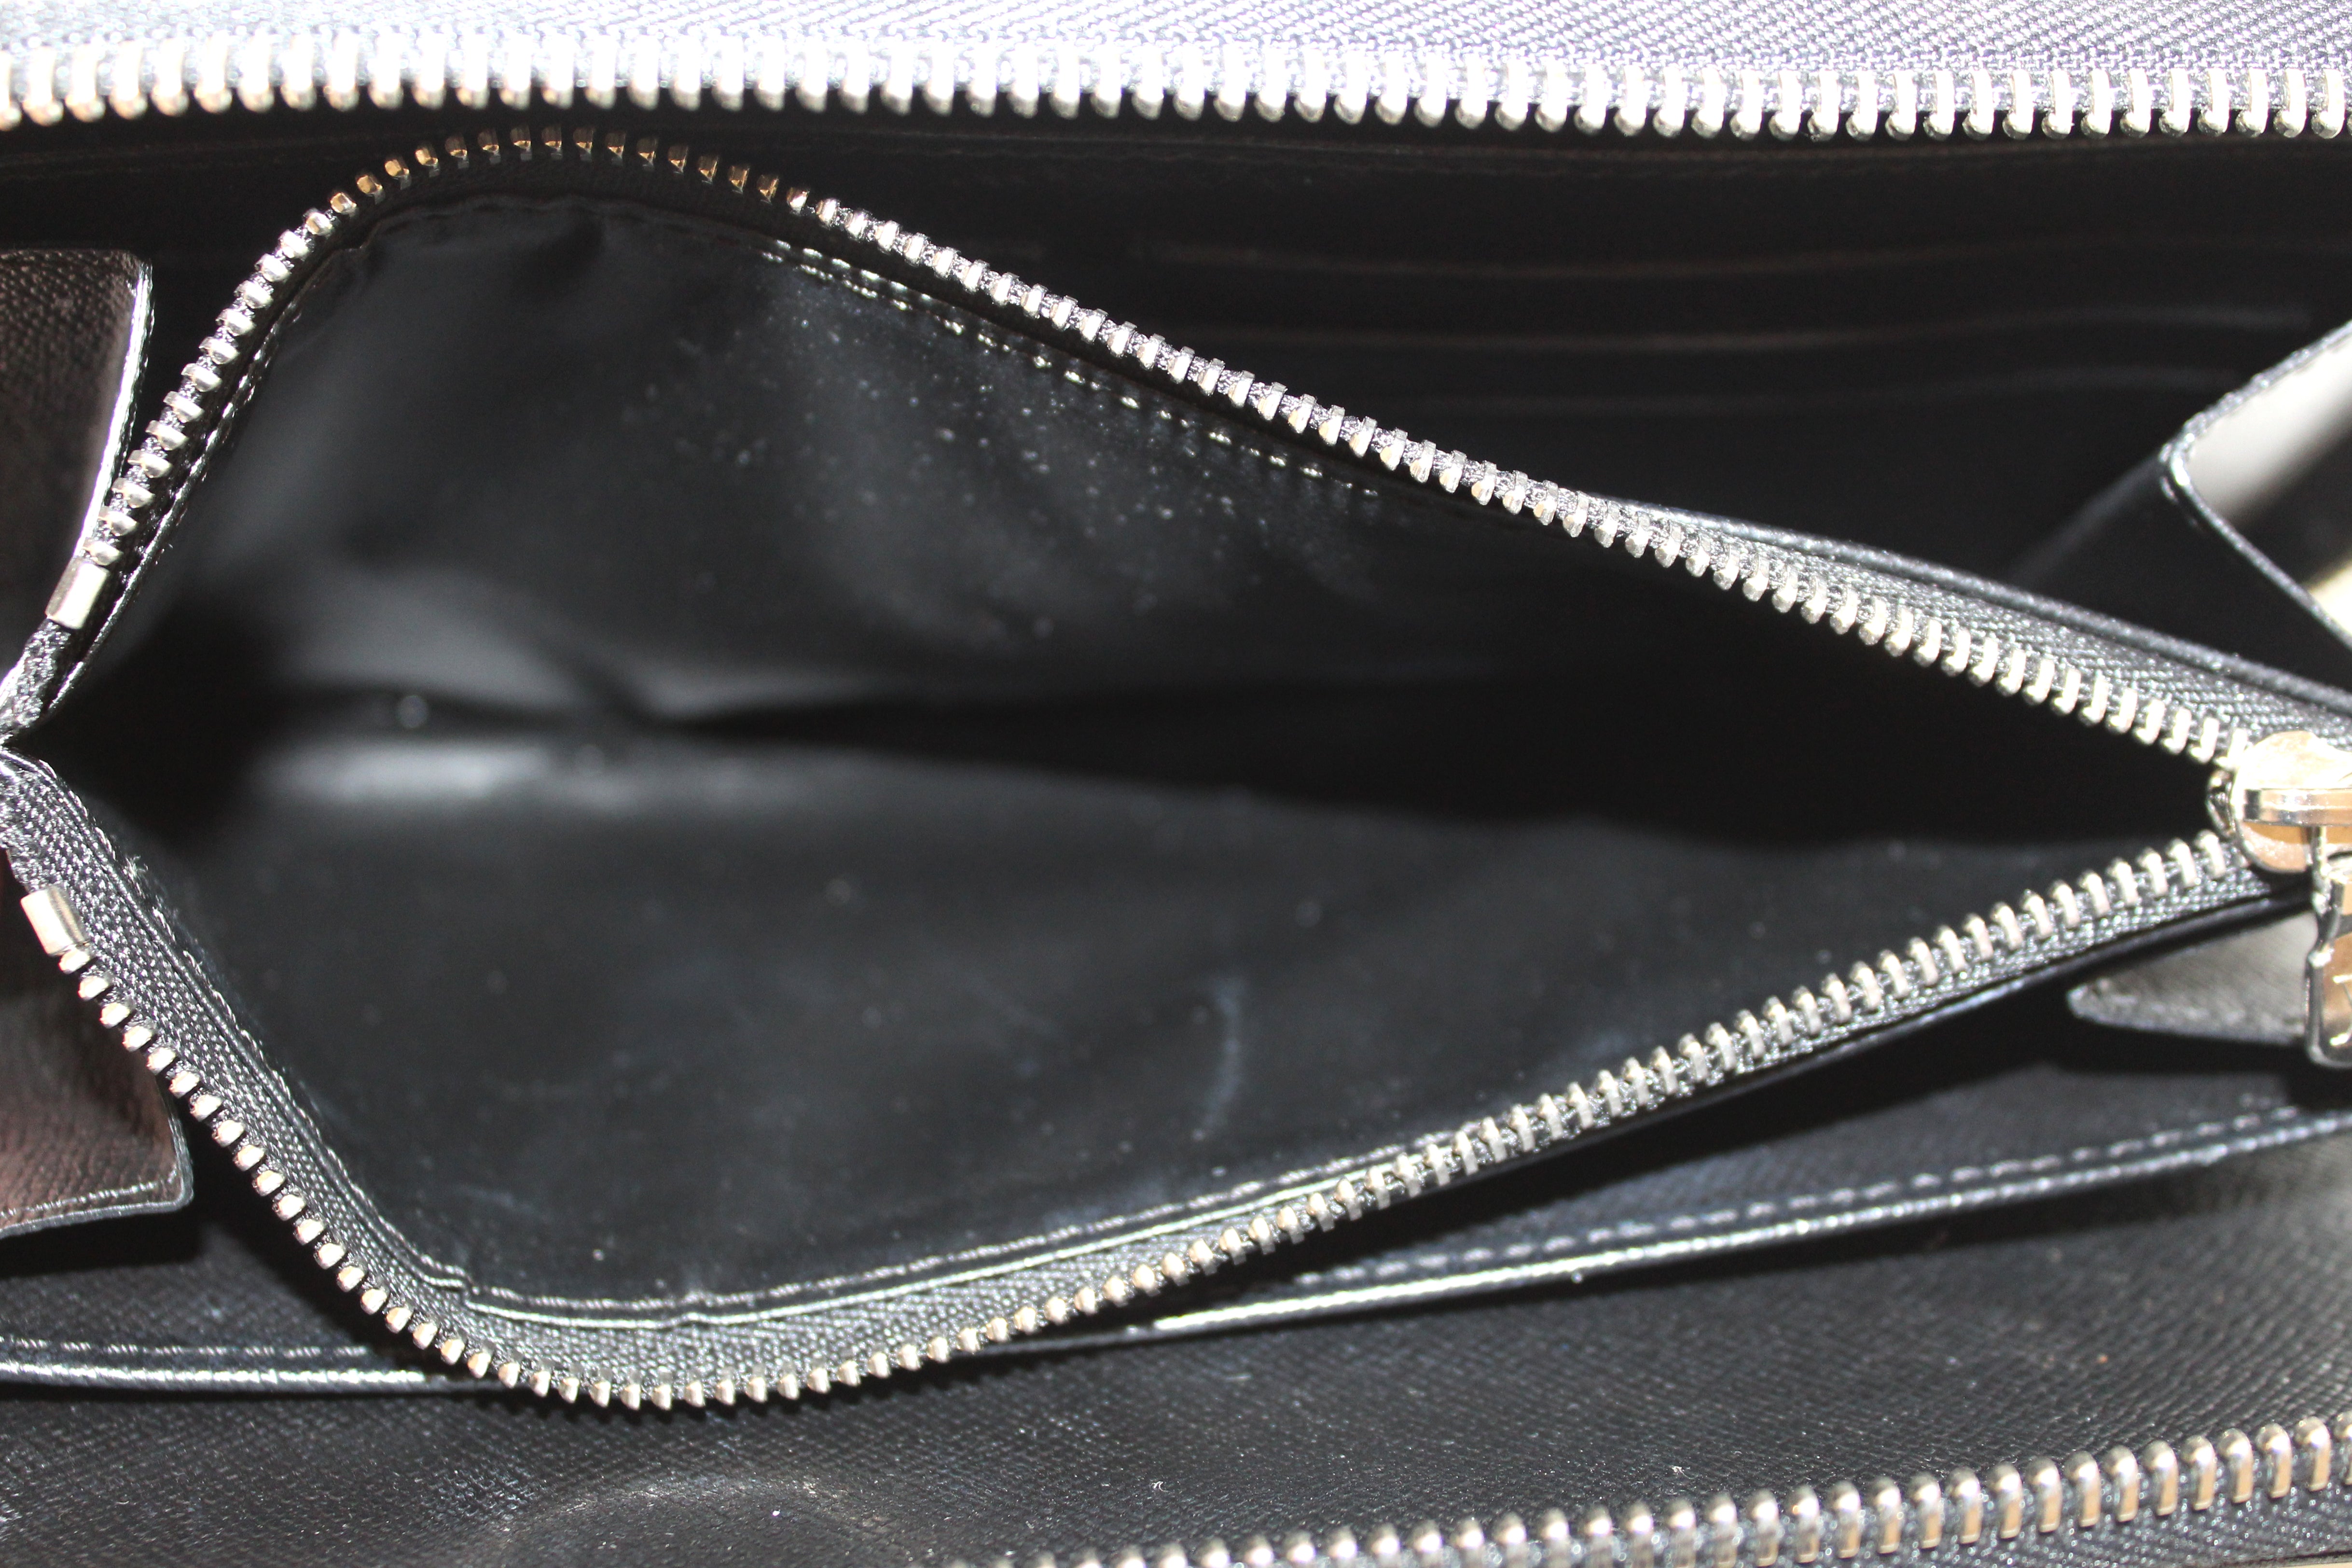 Authentic Louis Vuitton Metallic Black Electric Epi Leather Zippy Organizer Wallet